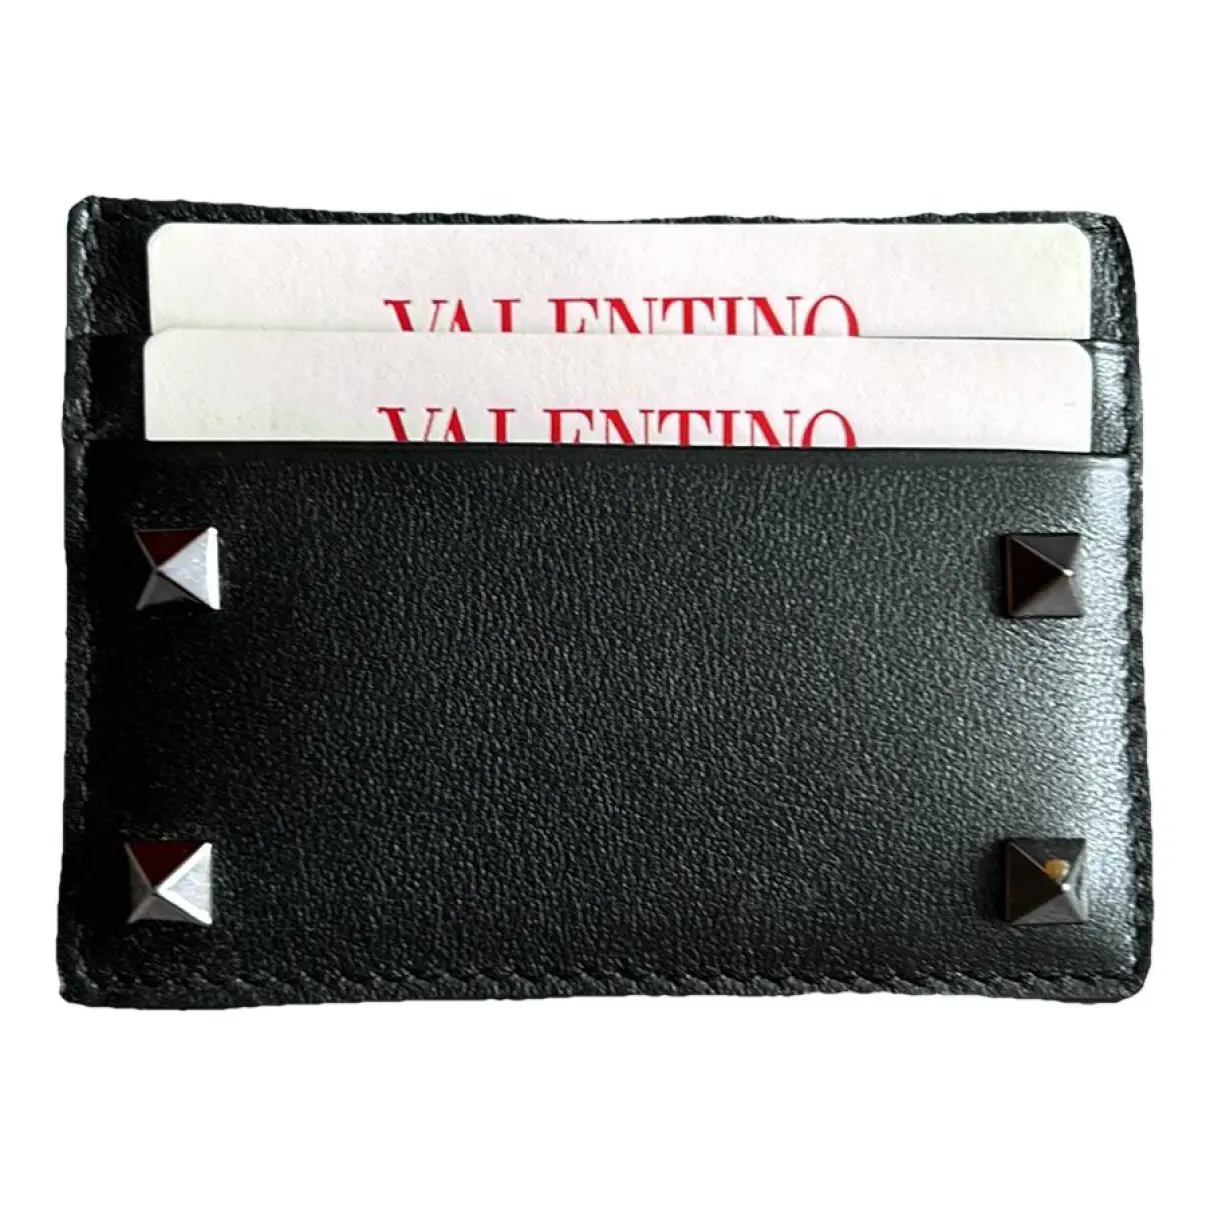 Rockstud leather wallet